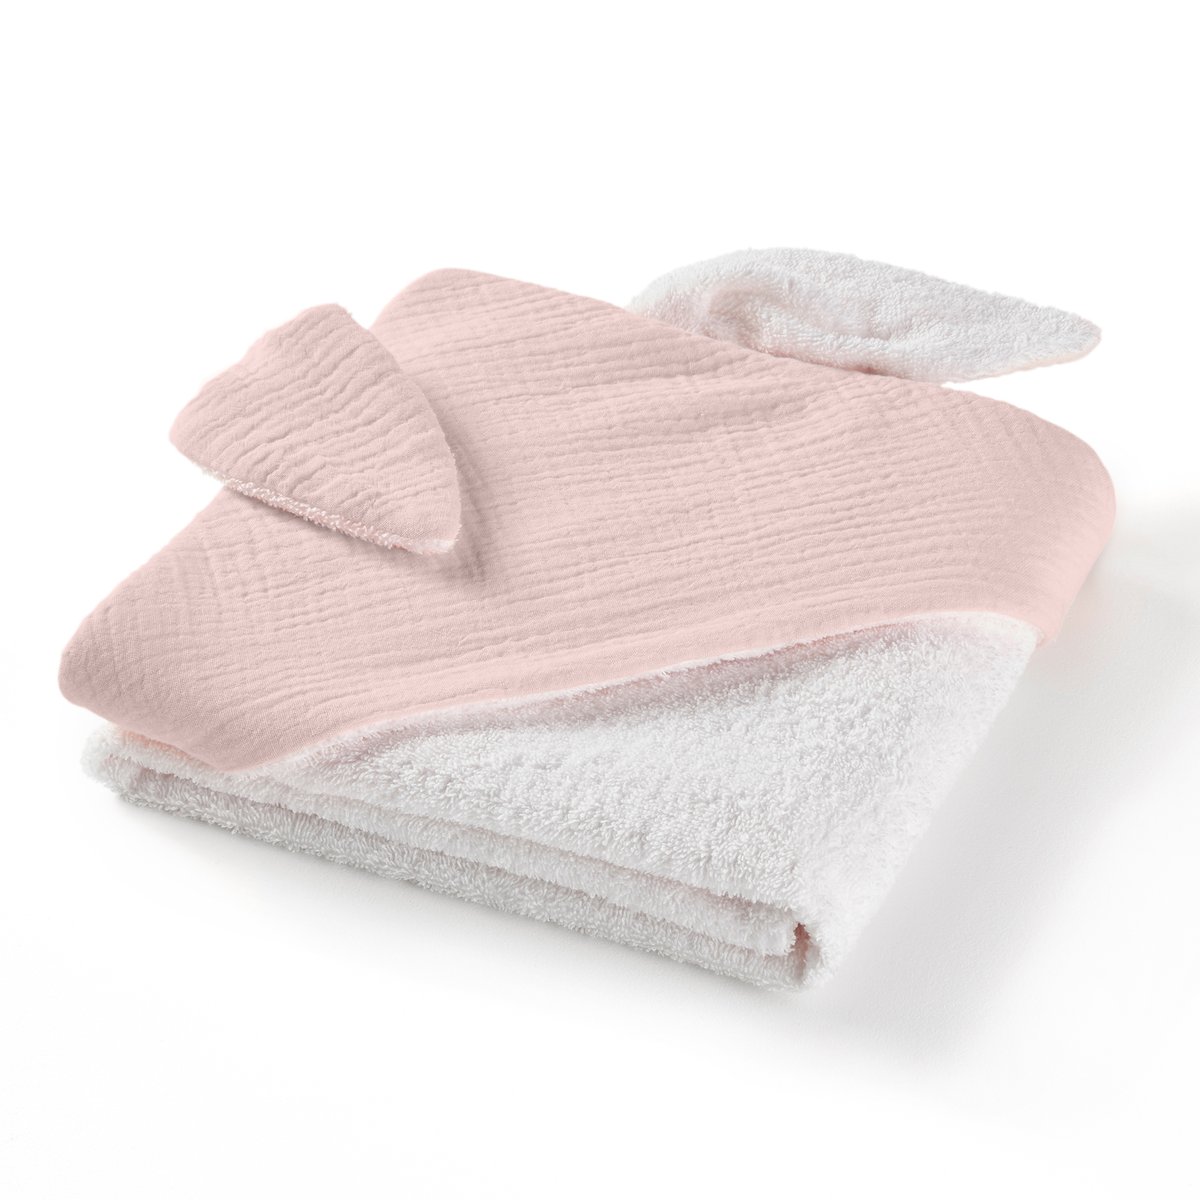 Накидка La Redoute Для ванной из хлопчатобумажной газовой ткани для новорожденного Kumla 70 x 70 см розовый, размер 70 x 70 см - фото 1